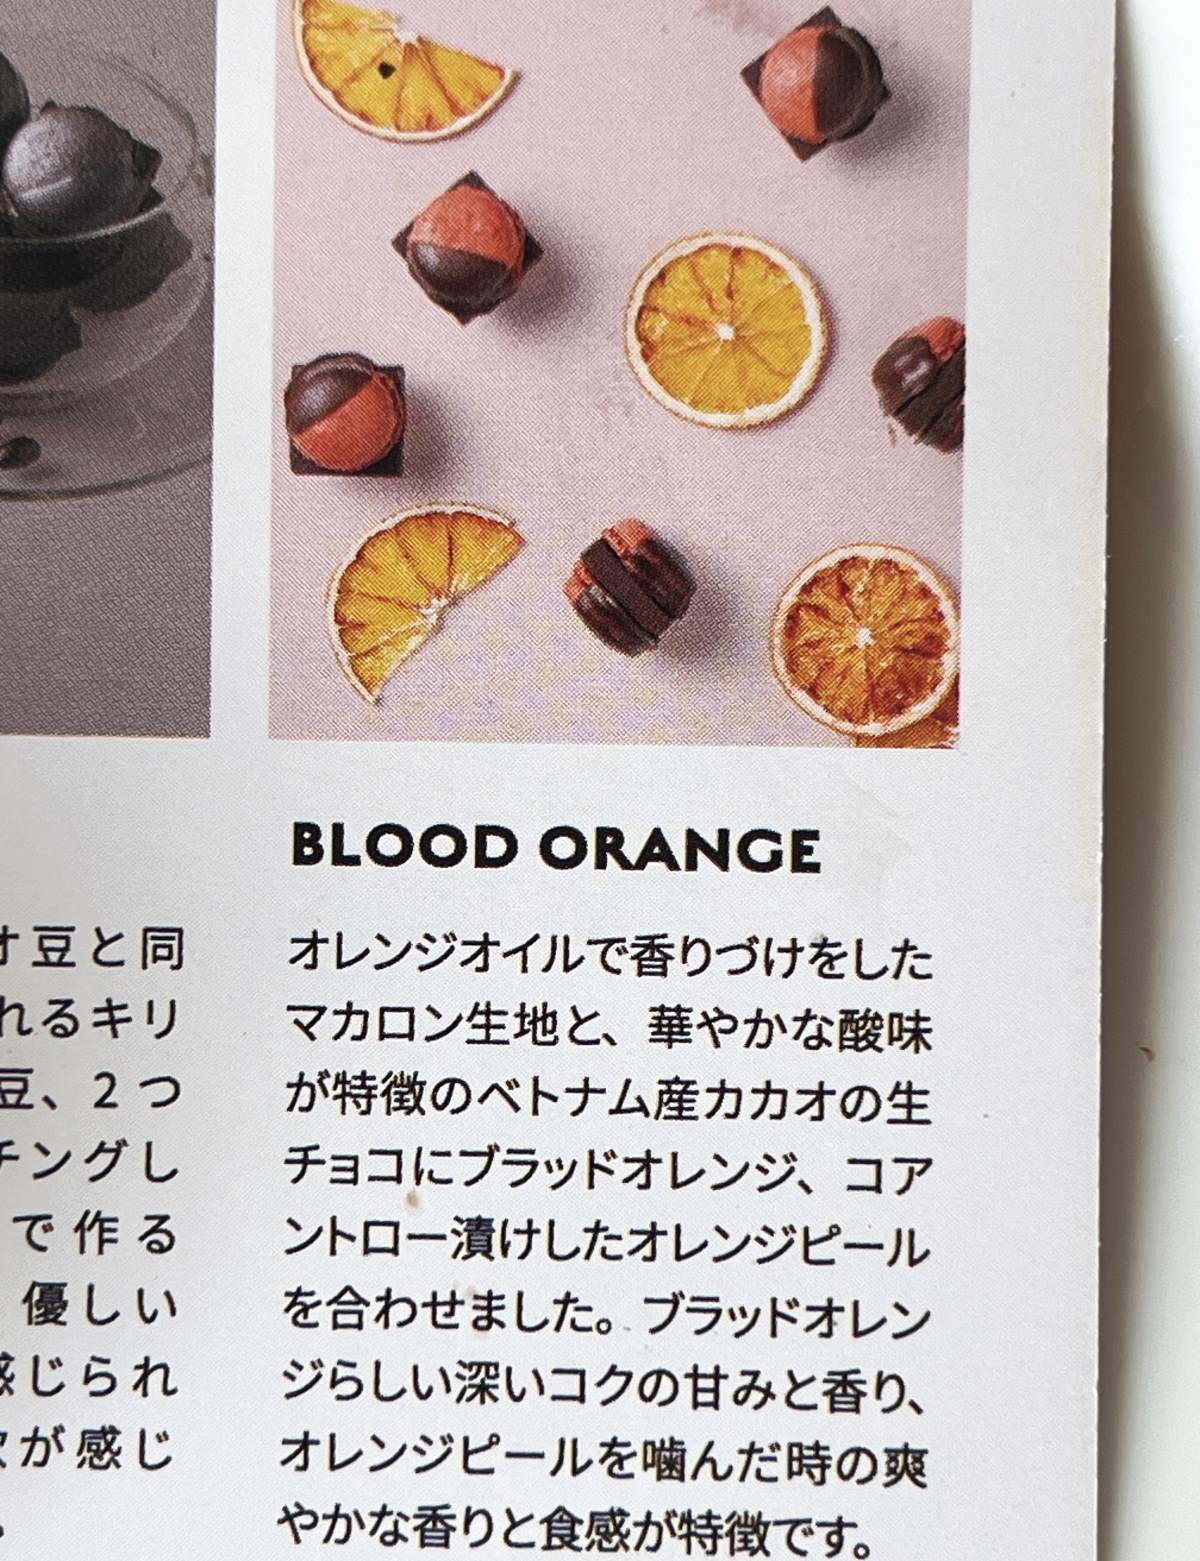 マメイル ブラッドオレンジ